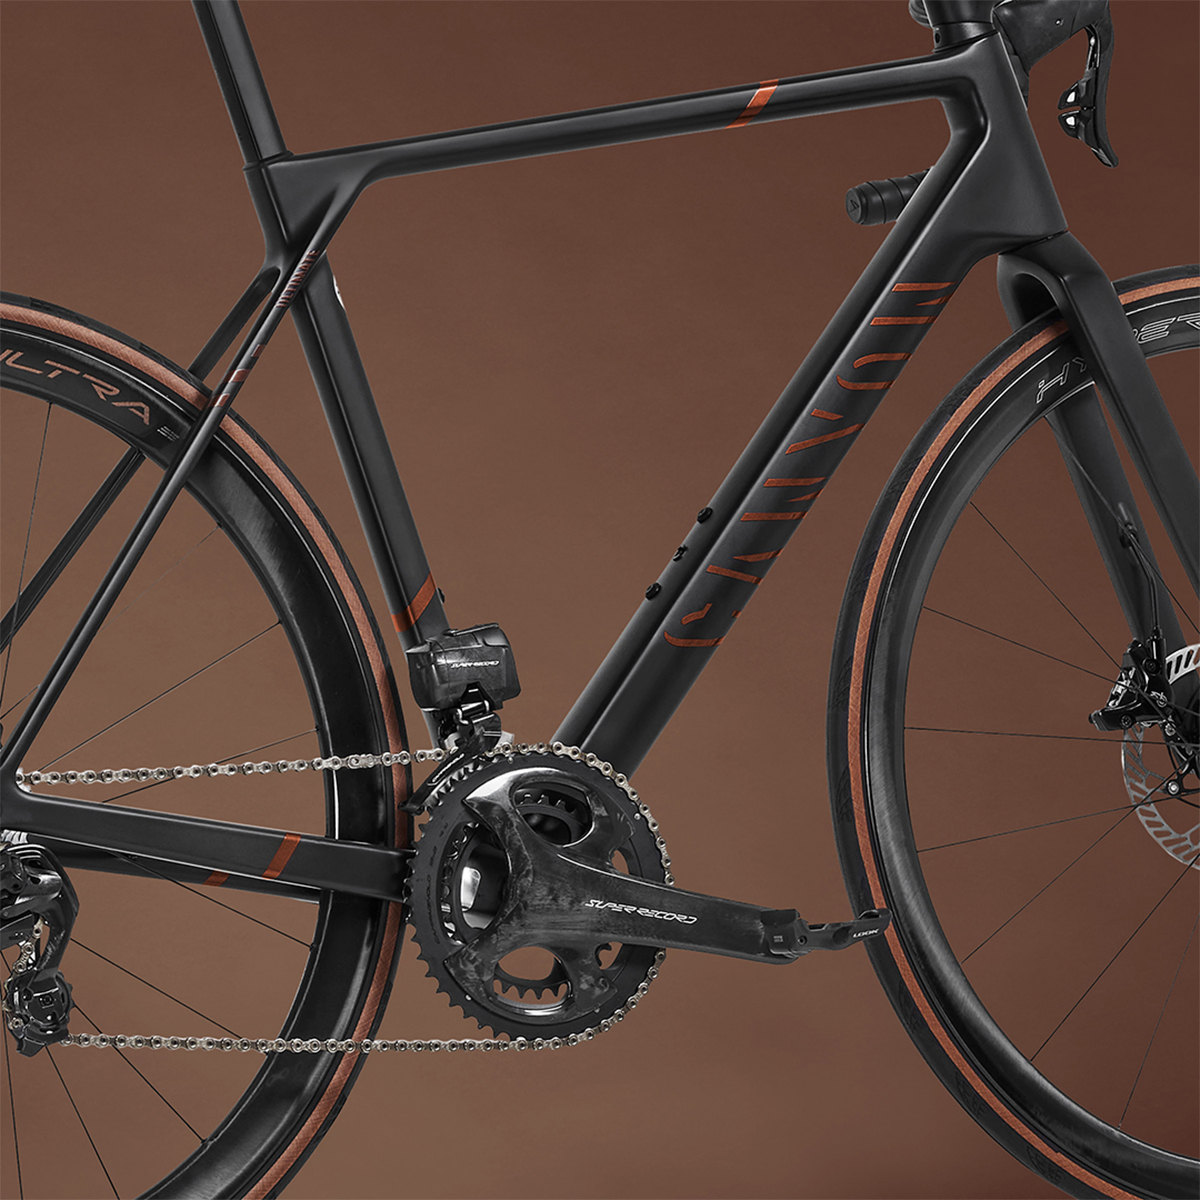 Canyon X Campagnolo, dos exclusivas bicicletas con grupo Campagnolo de gama alta y acabados prémium